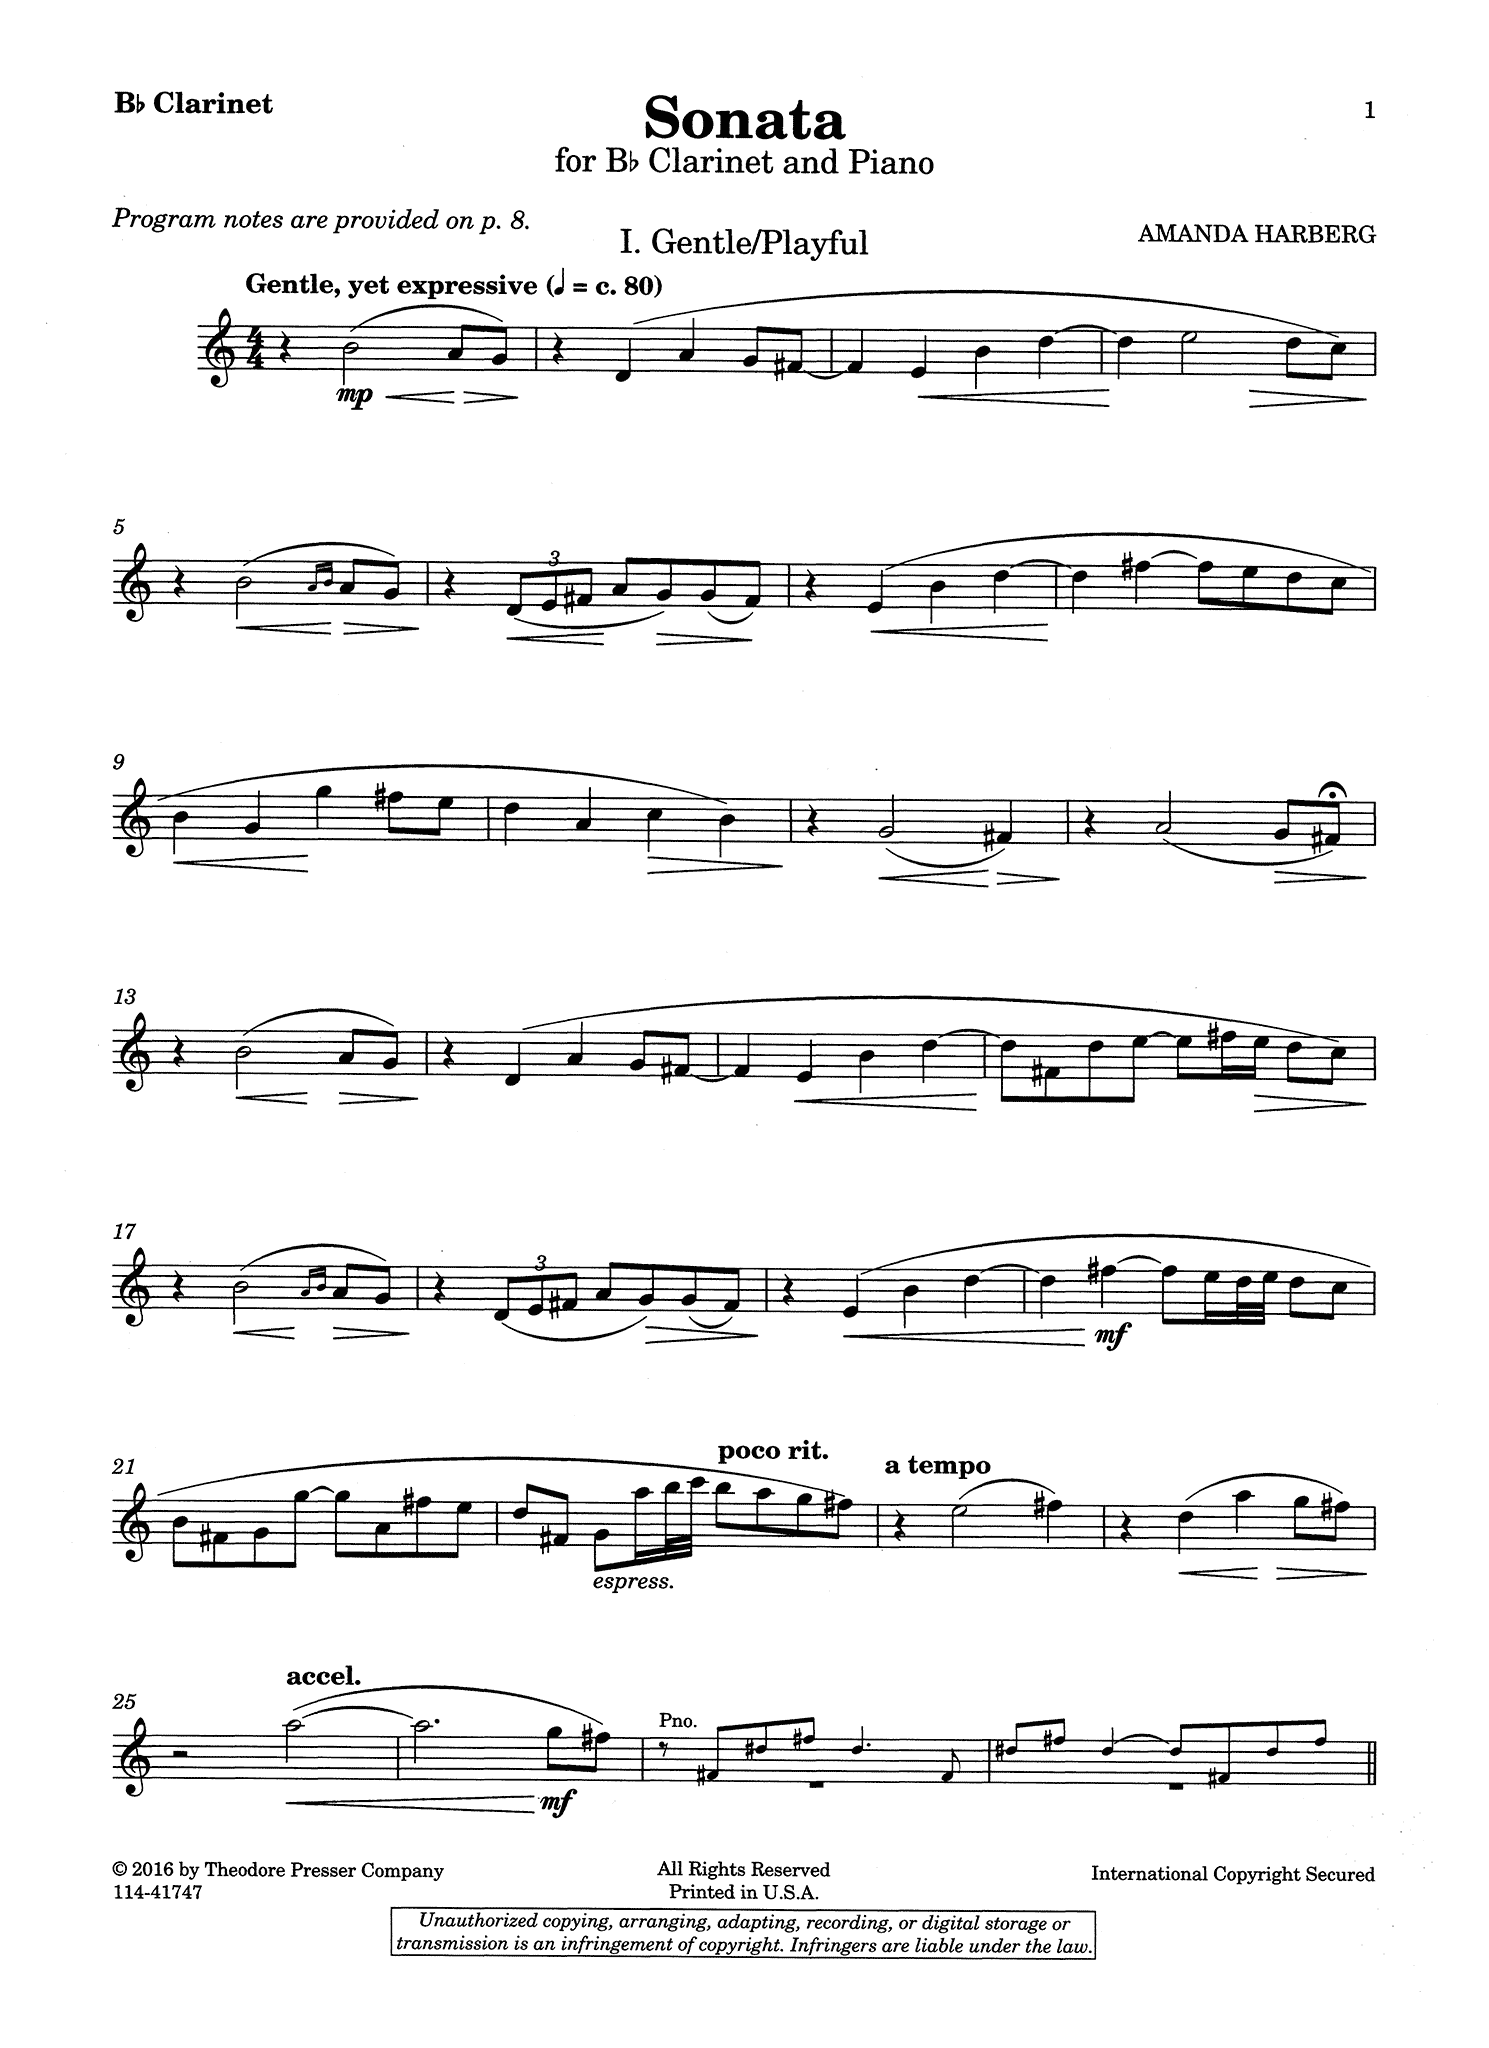 Harberg Clarinet Sonata Clarinet part